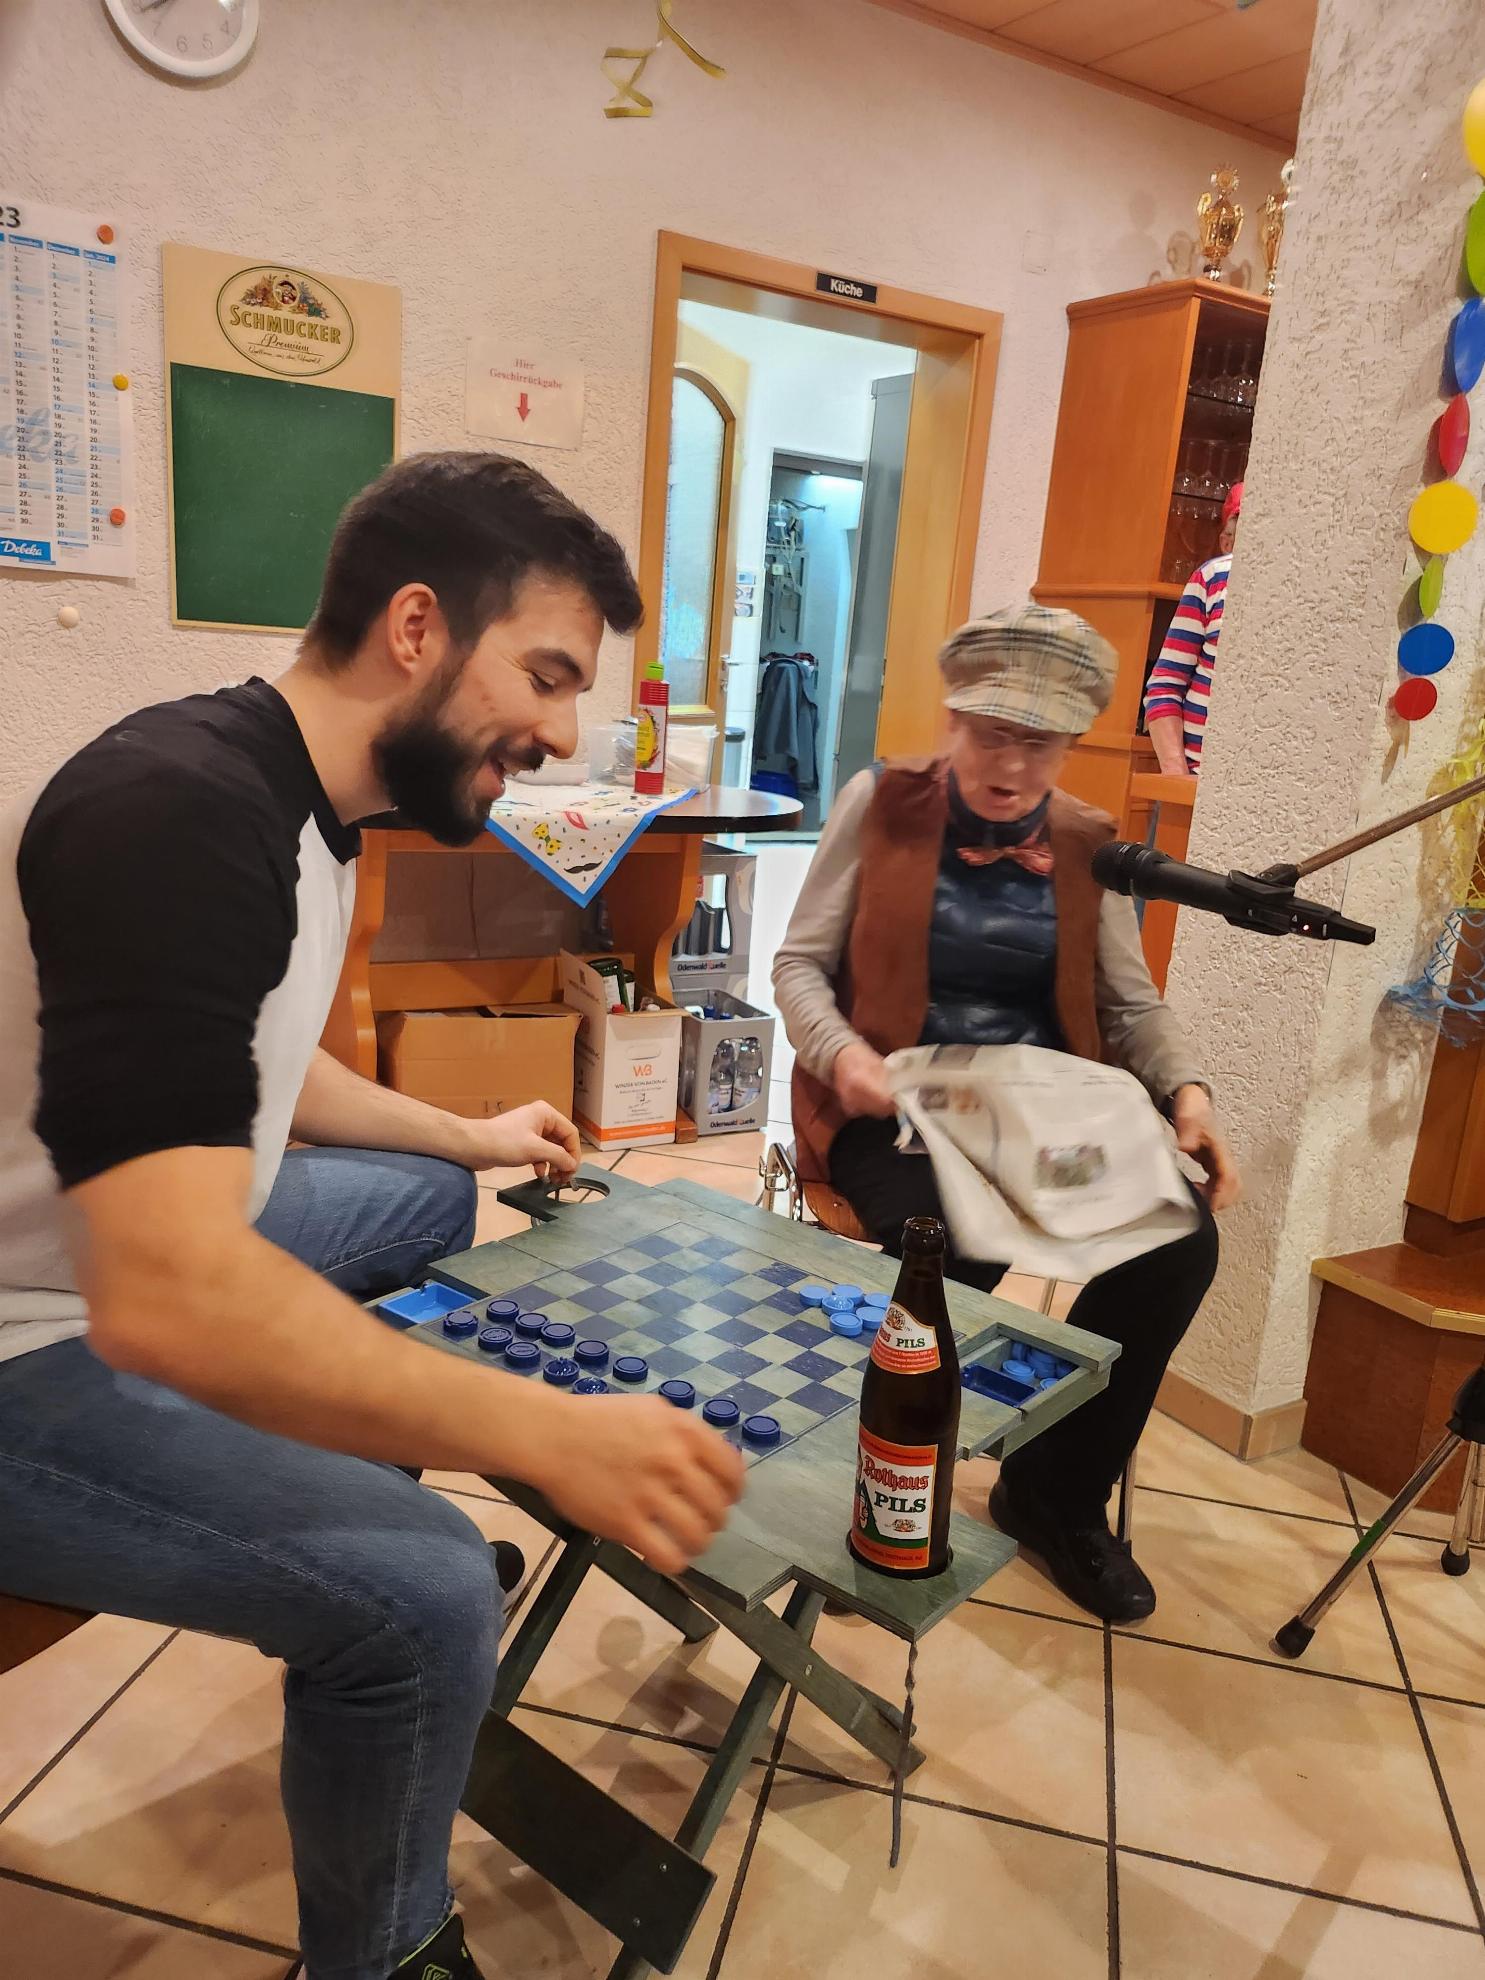 Ein junger Mann unterhällt sich mit einer älterne Frau, sie sitzen dabei an einem Tisch mit Schachbrettmuster auf dem eine Bierflasche steht